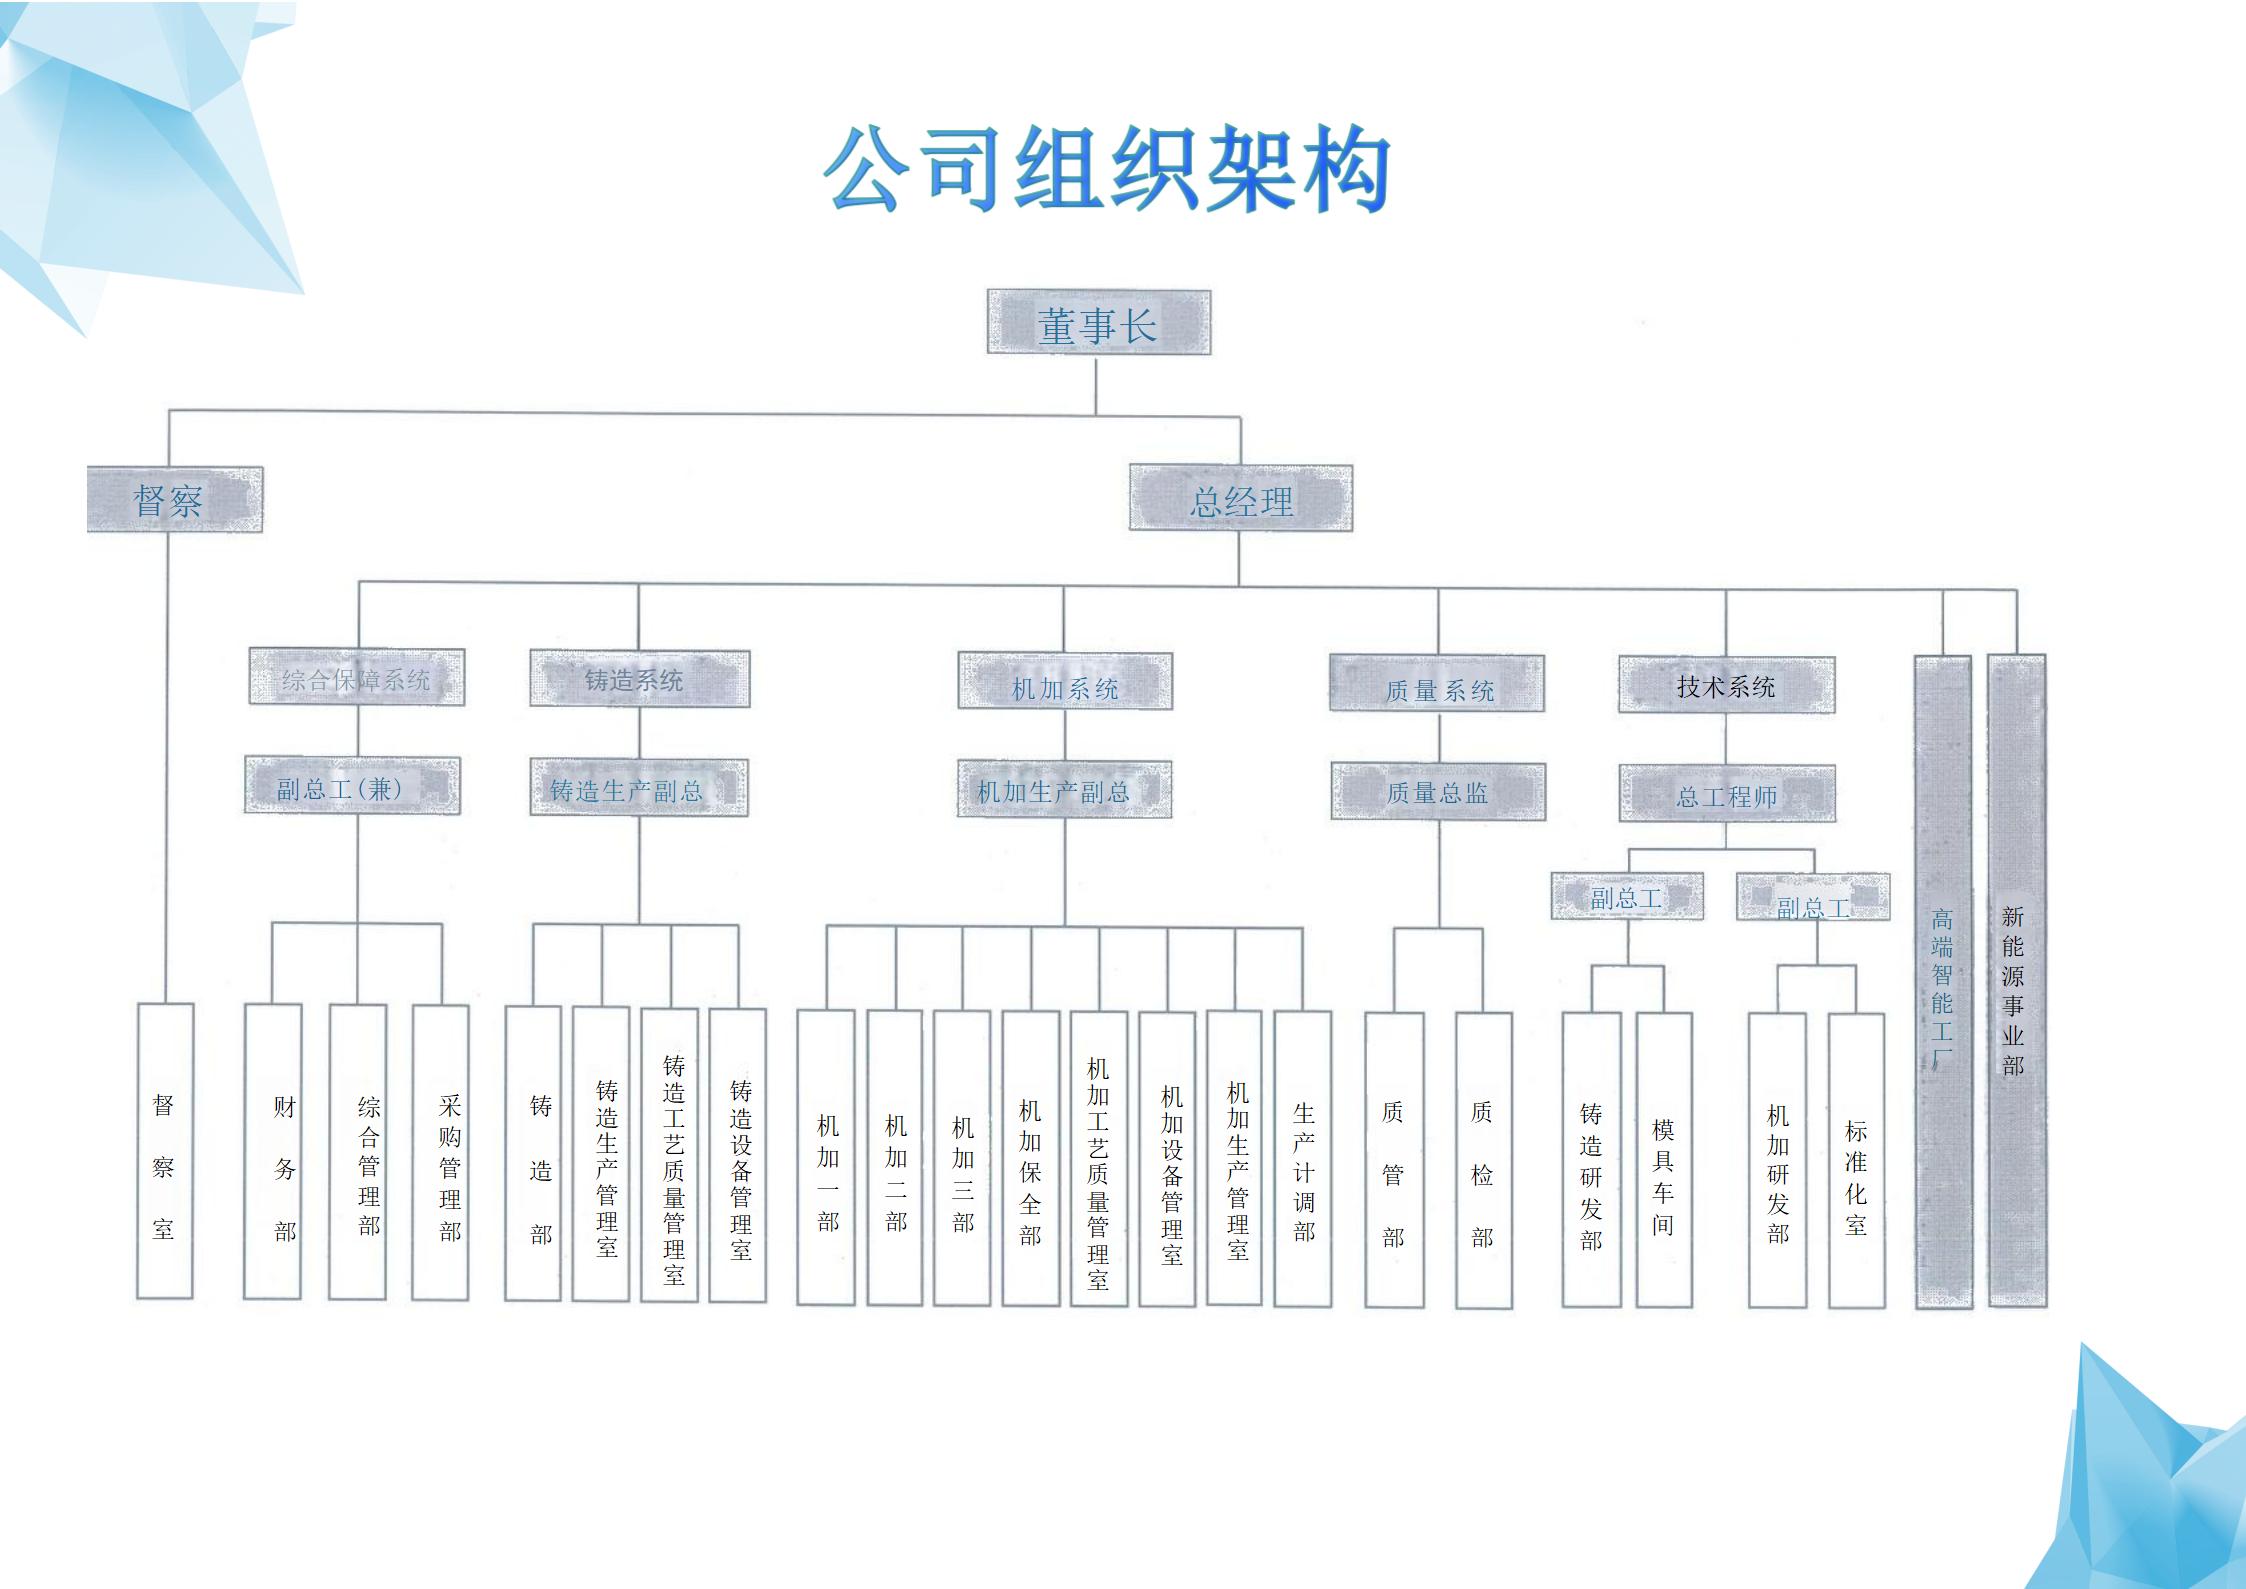 公司组织架构及岗位定编图(2024年版）_02.jpg